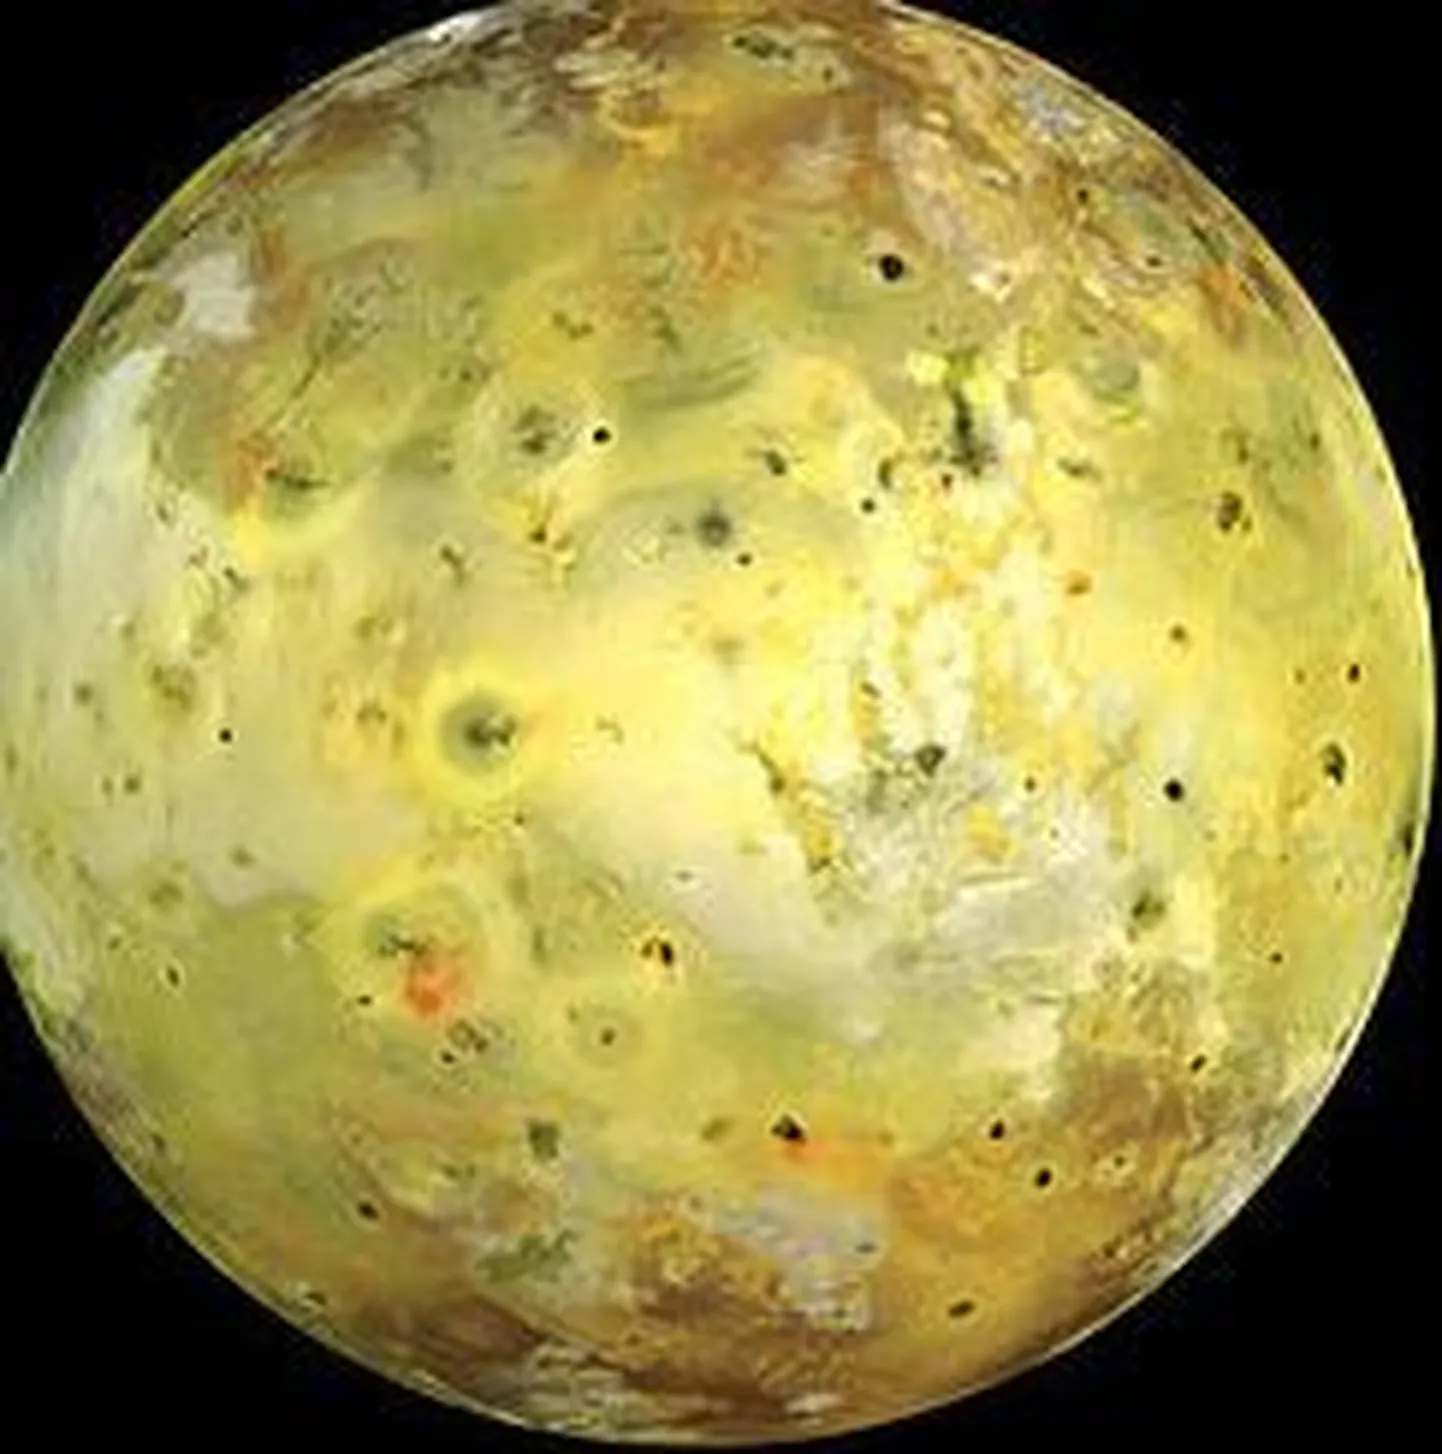 Jupiteri kuu Io